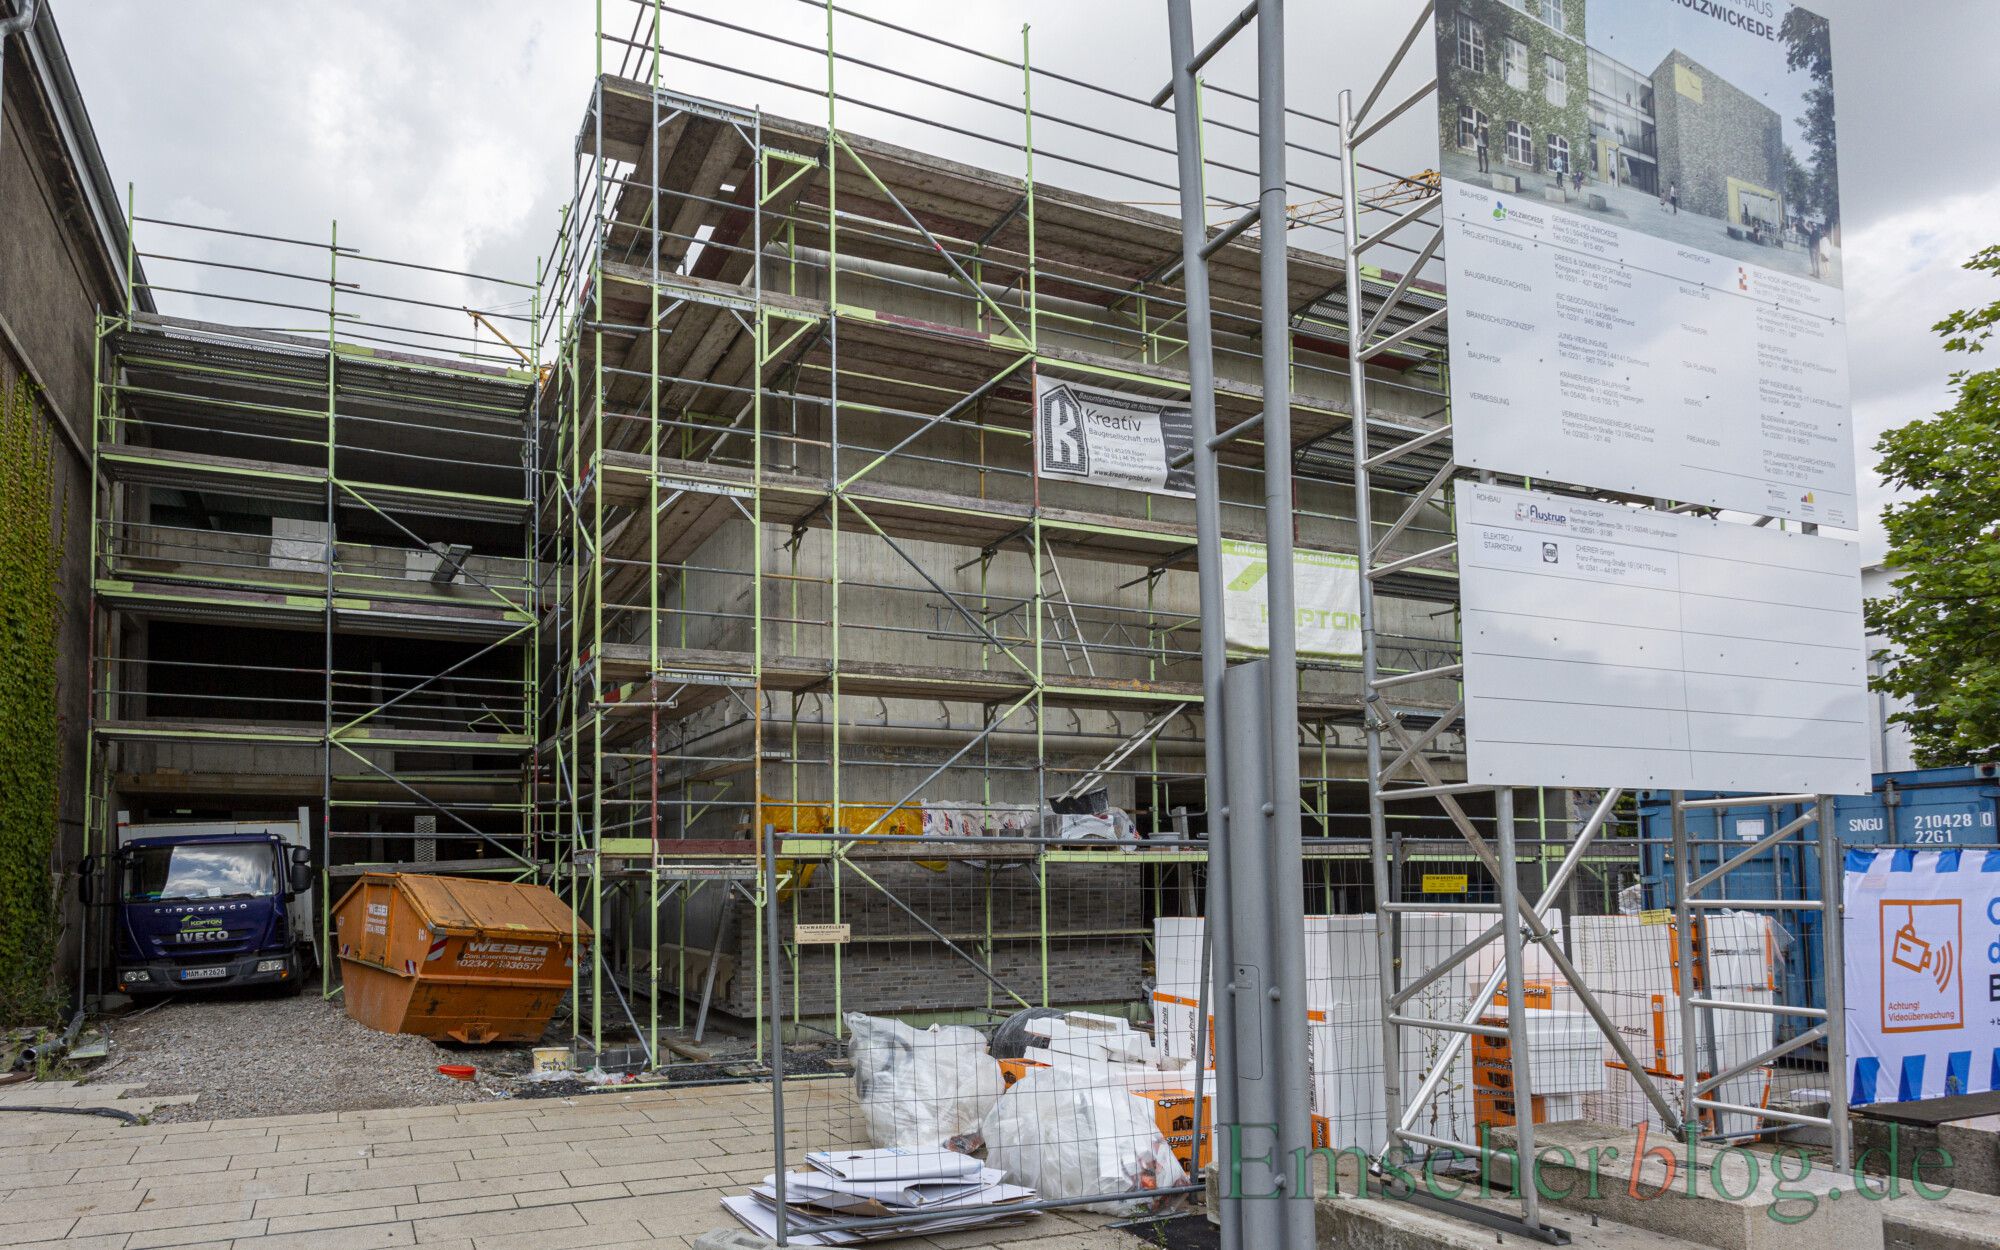 Das Ende und die technische Abnahme des Rohbaus stellt einen Meilenstein beim Bau des neuen Rat- und Bürgerhauses dar. (Foto: P. Gräber - Emscherblog)